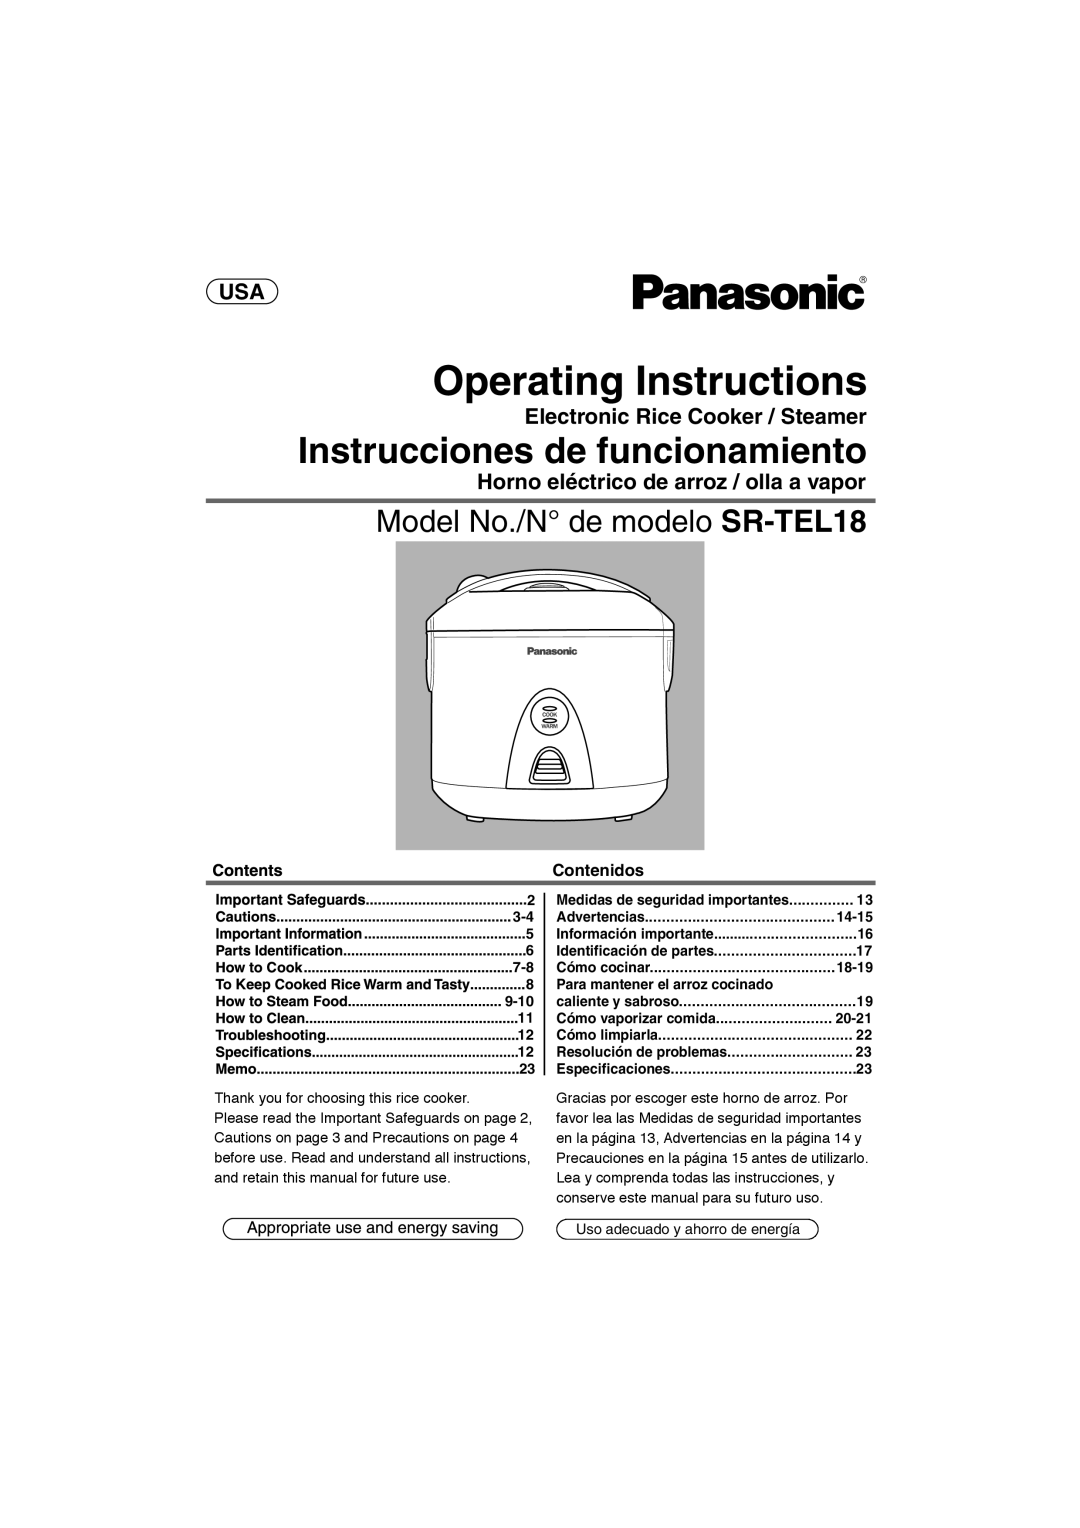 Panasonic manual Instrucciones de funcionamiento, Model No./N de modelo SR-TEL18, USA Electronic Rice Cooker / Steamer 